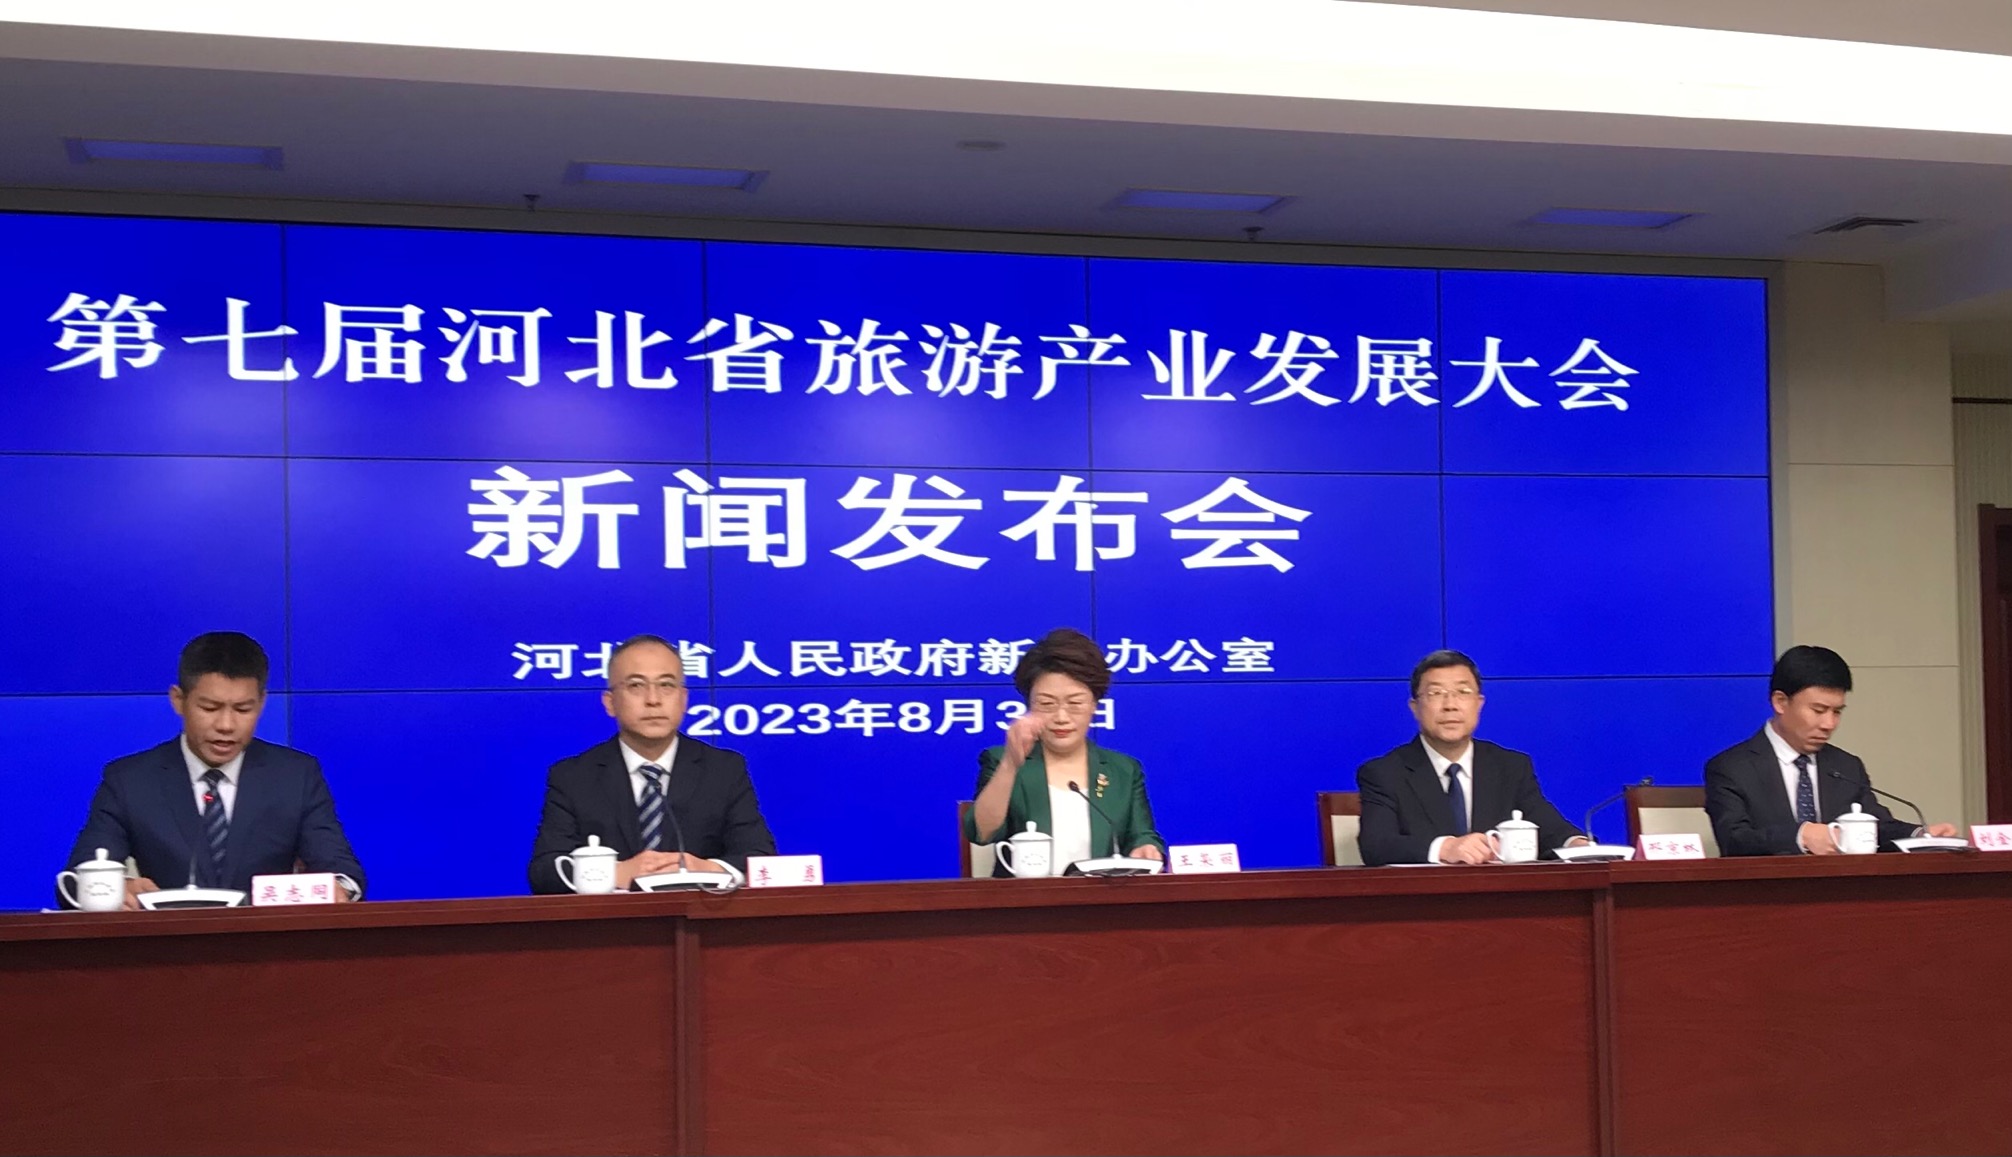 第七屆河北省旅遊產業發展大會即將召開